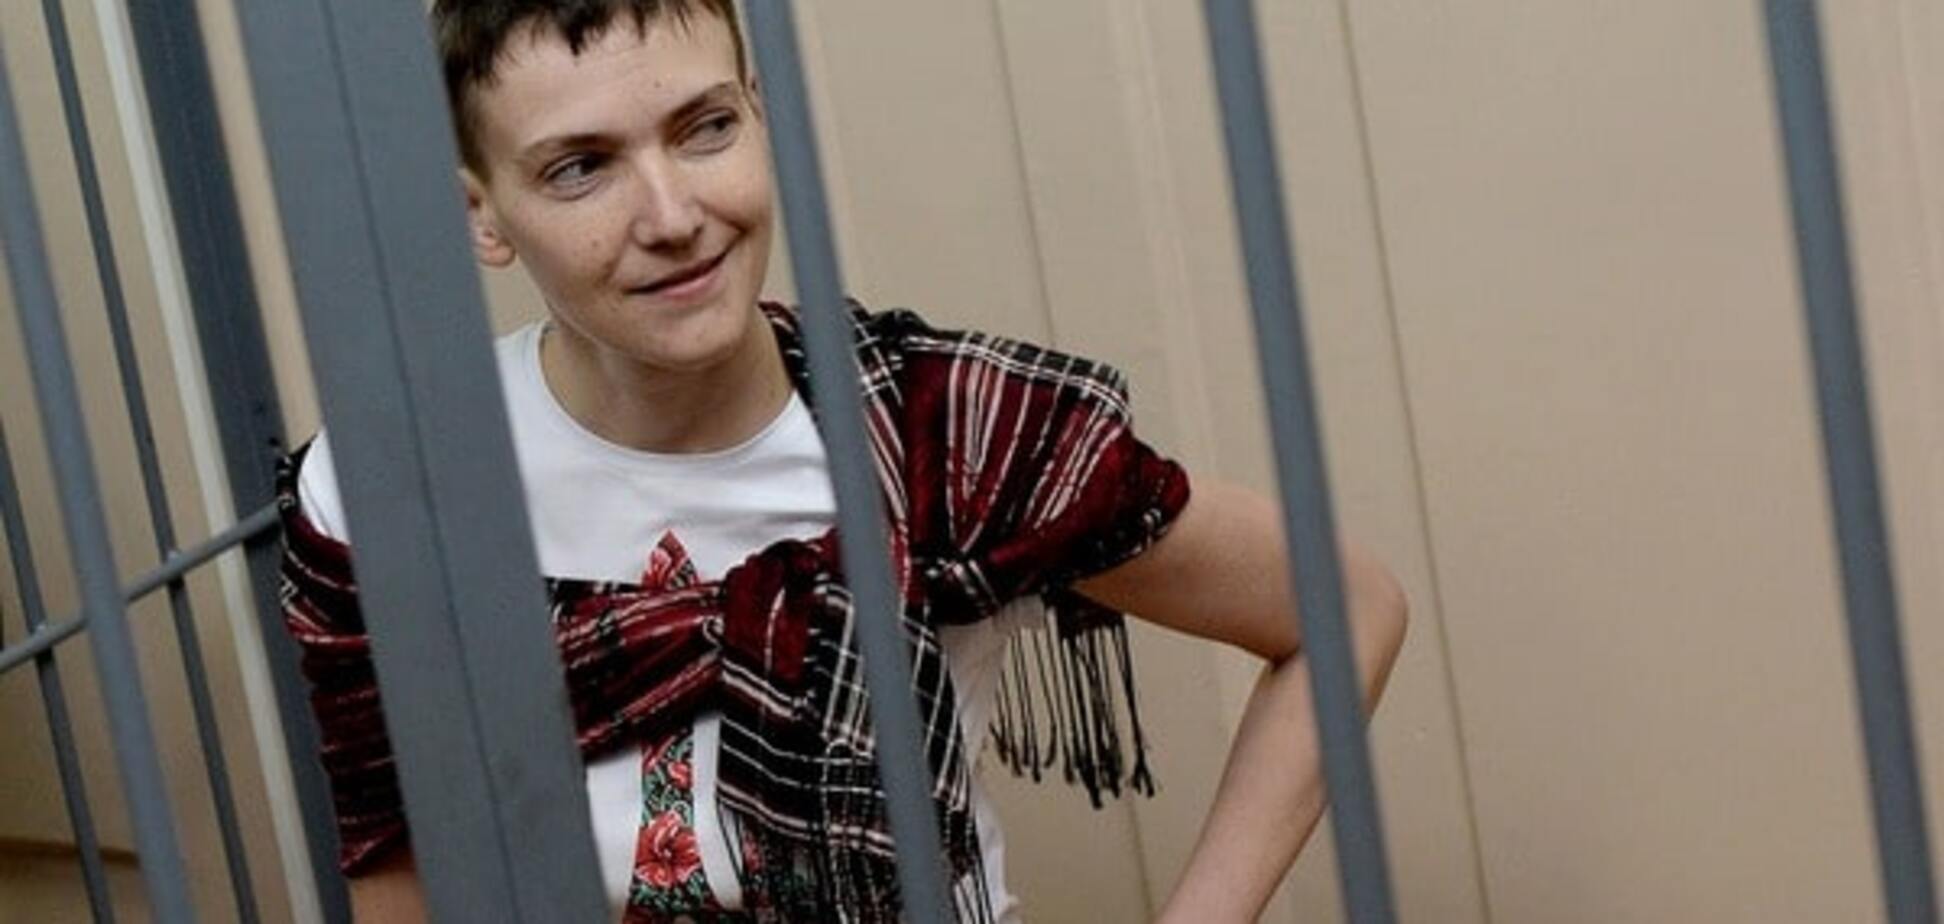 Росія відмовилася від будь-яких домовленостей щодо Савченко та інших політв'язнів - МЗС України